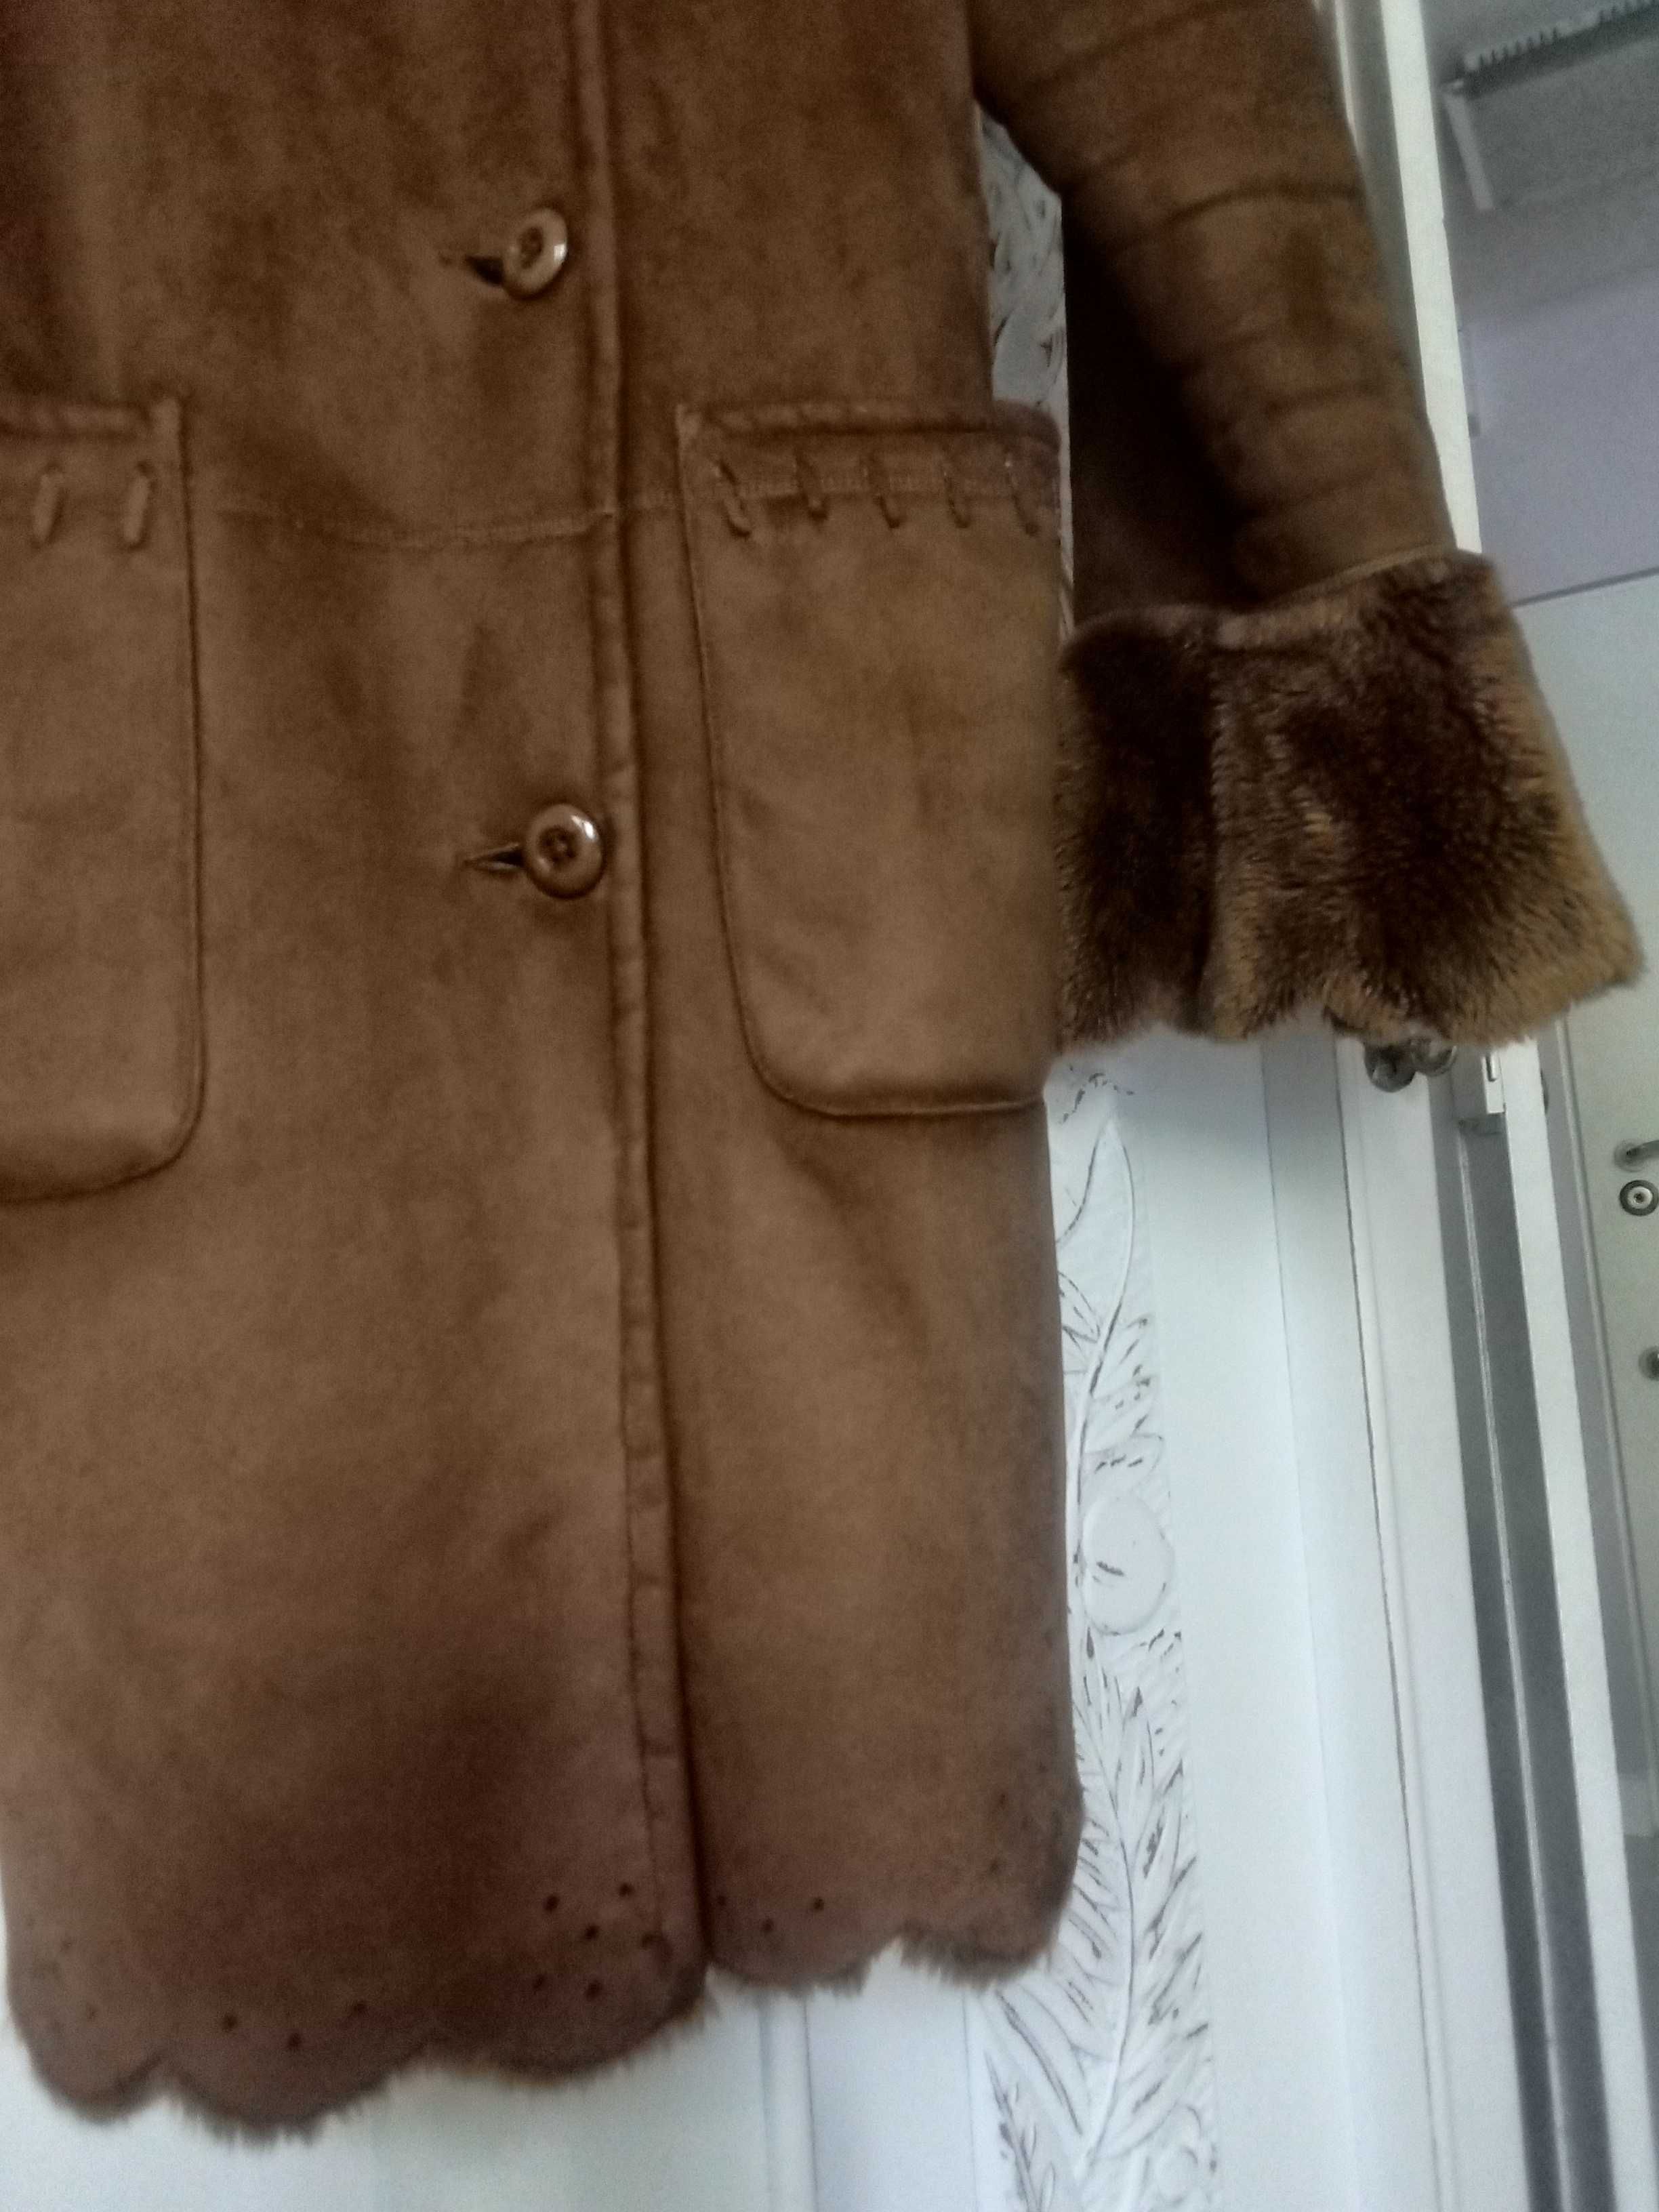 GRATIS kożuszek kożuch damski płaszcz zimowy 42 XL ocieplany